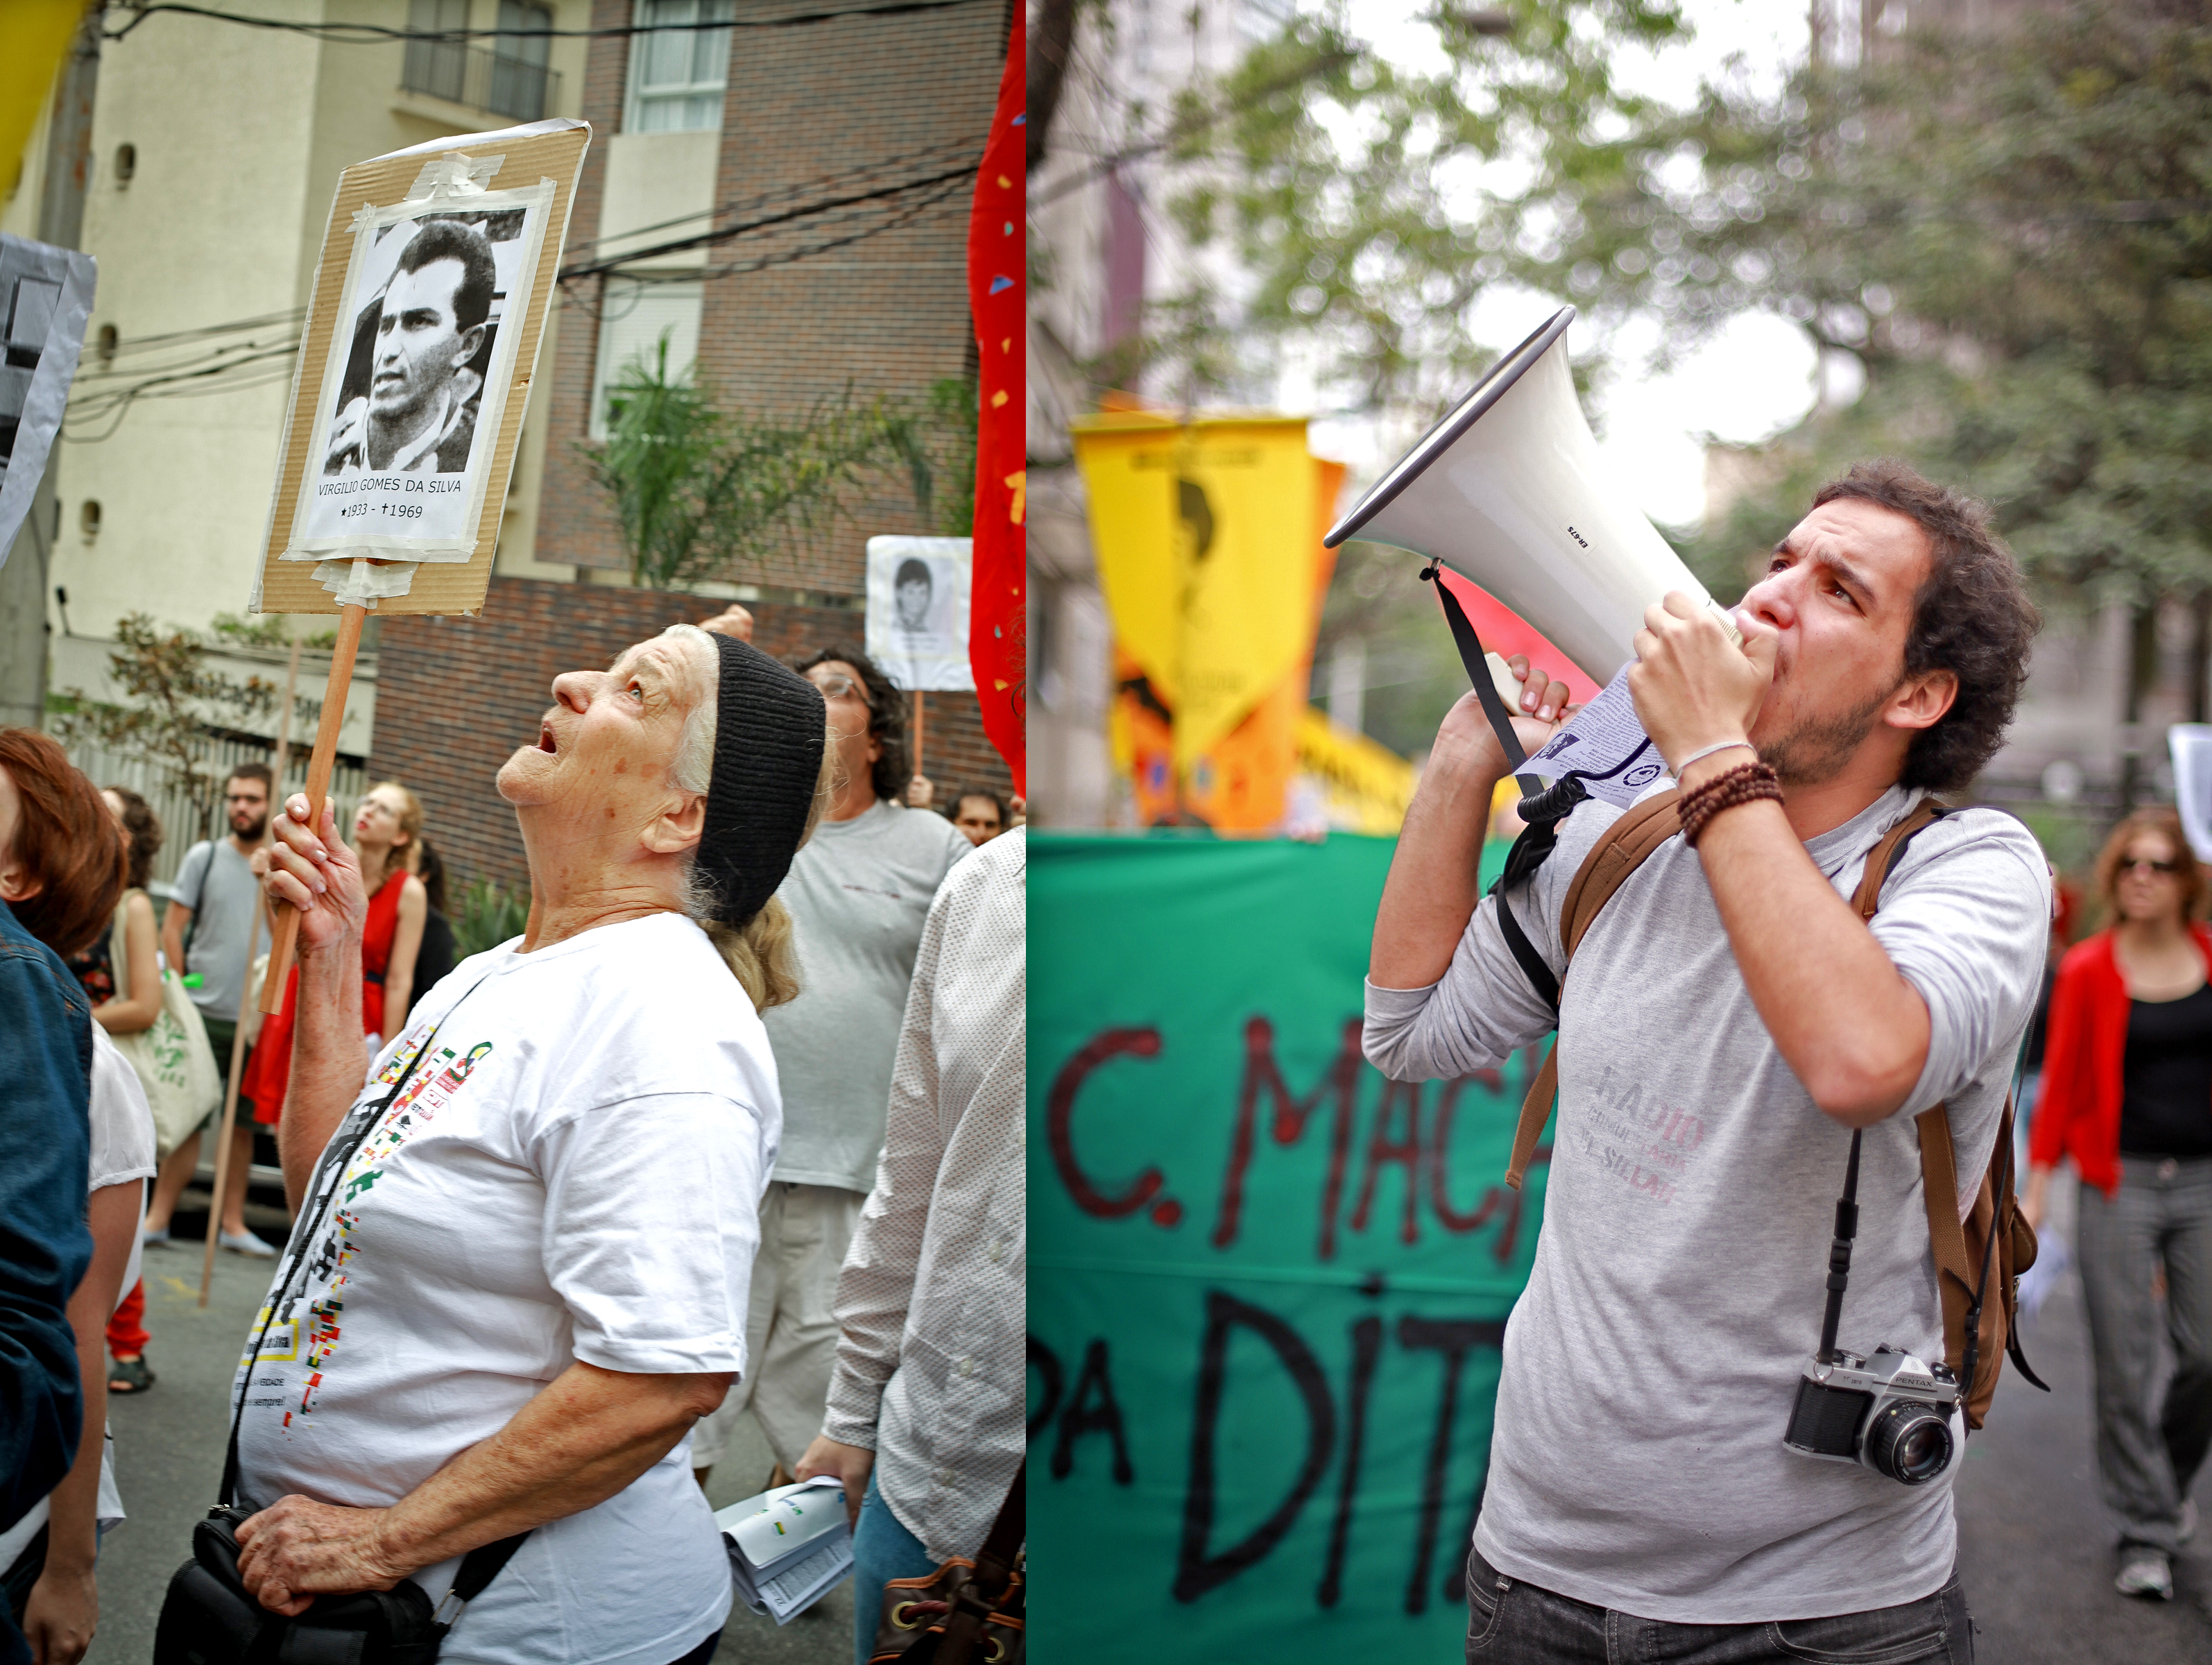 D. Hilda, viúva do desaparecido Virgílio Gomes da Silva (Jonas), na manifestação da Frente de Esculacho Popular contra o torturador Homero César Machado, em 22/10/2013. Foto Peu Robles.